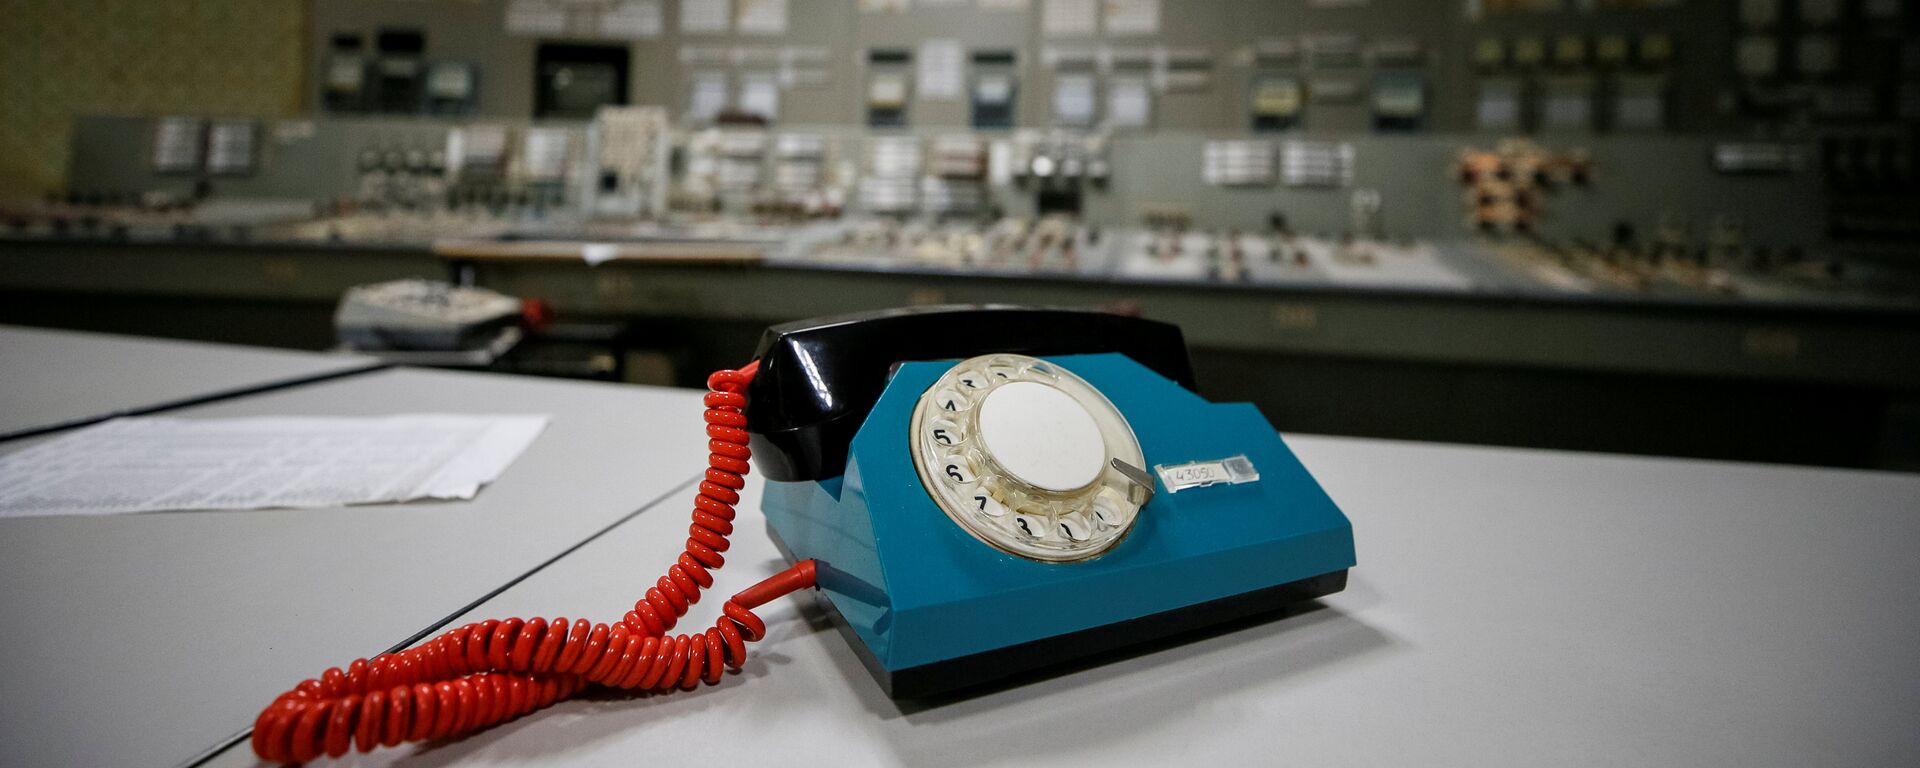 Телефон в центре управления остановленного третьего реактора на Чернобыльской атомной электростанции - Sputnik Таджикистан, 1920, 26.04.2019